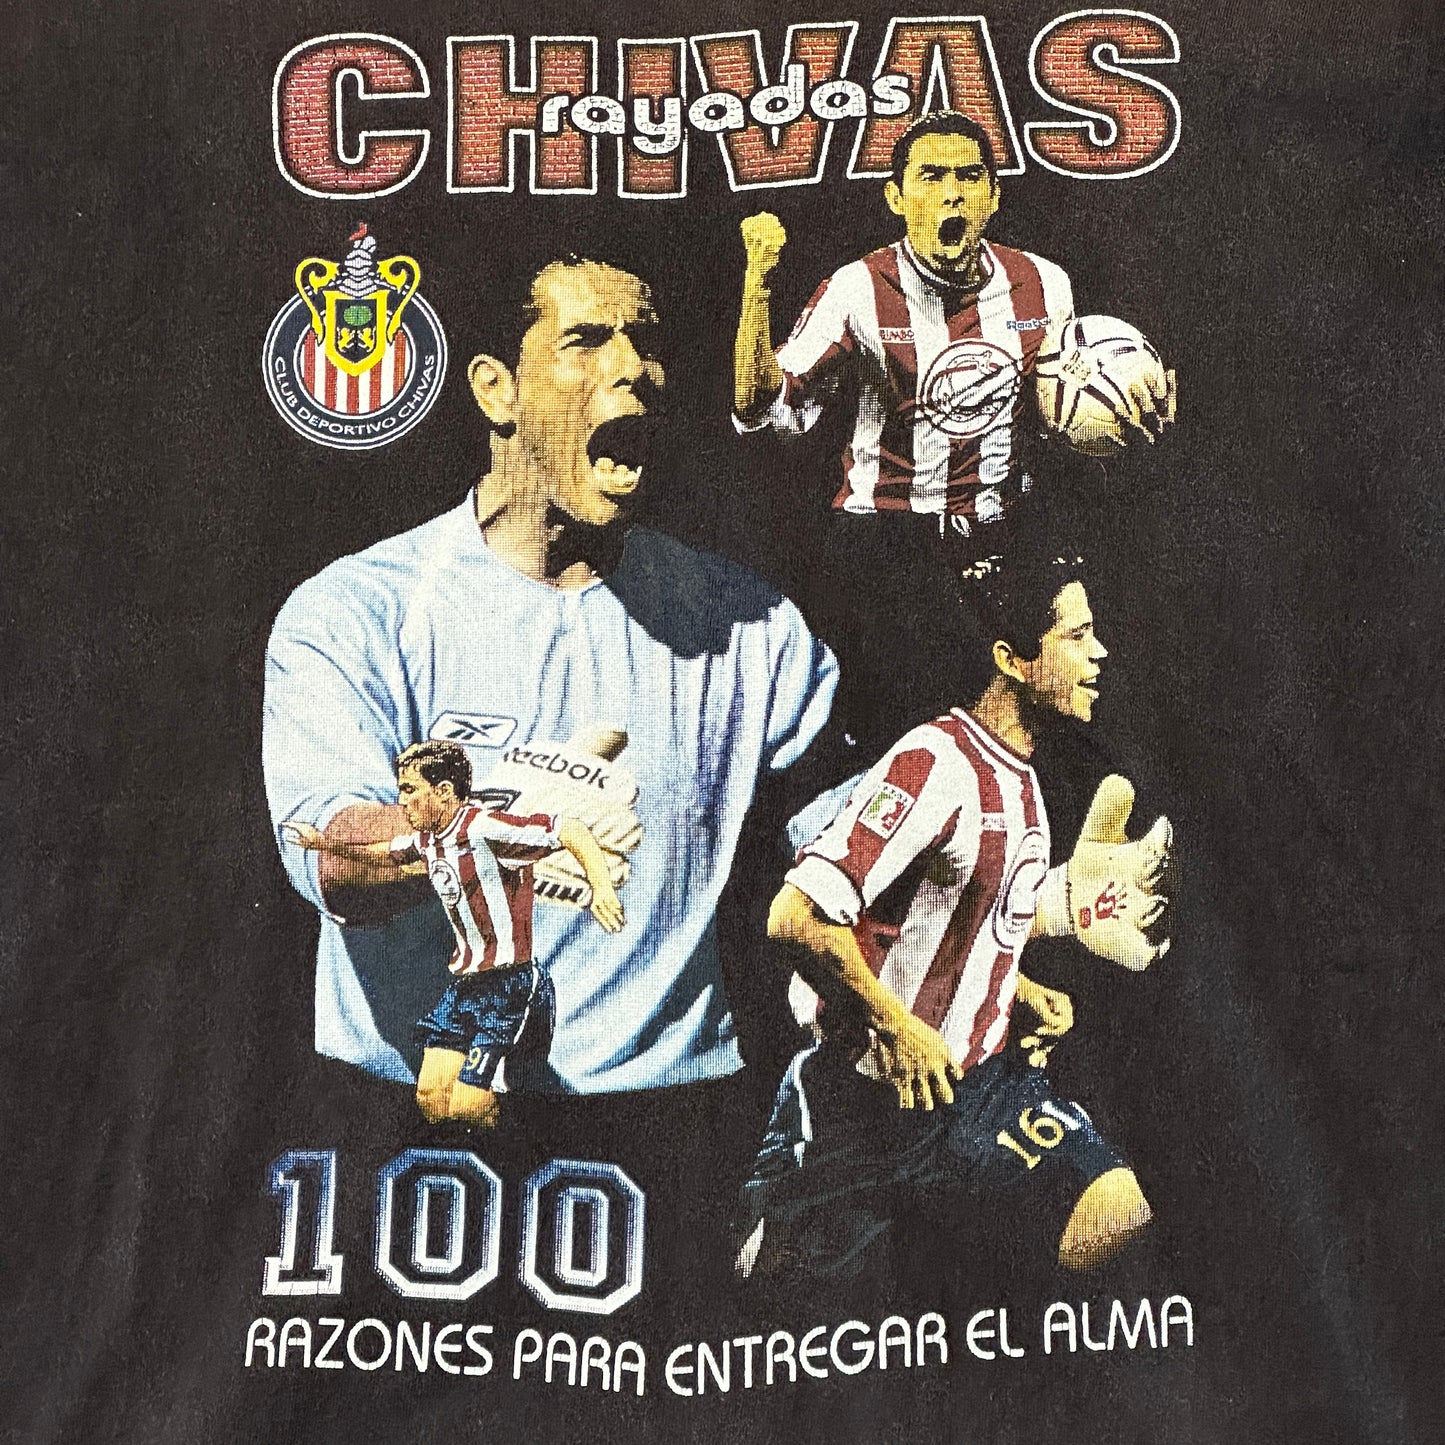 Vintage Club Deportivo Guadalajara "Las Chivas" 00's T-shirt